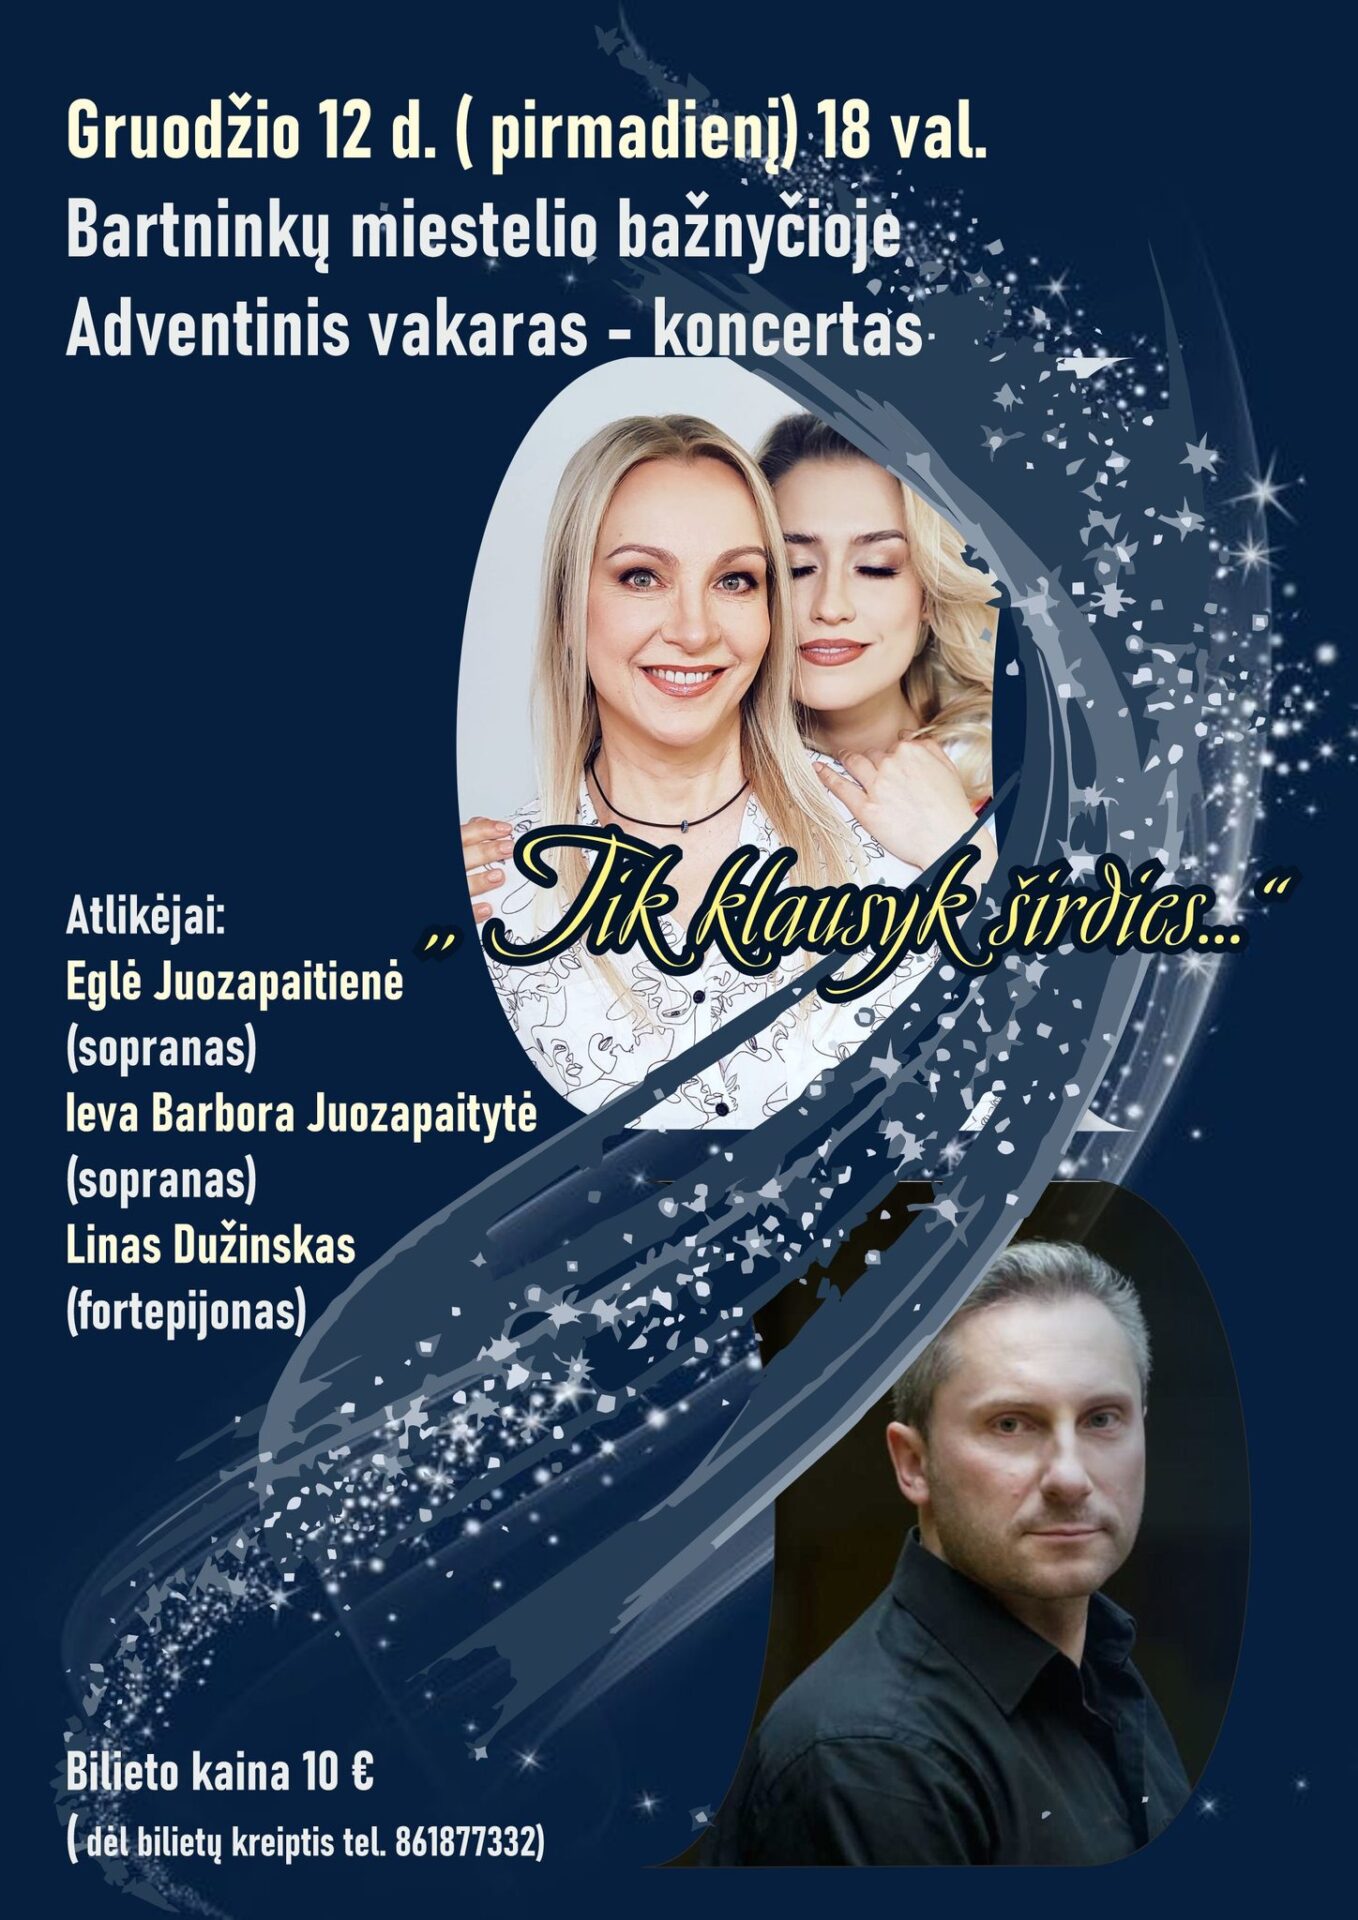 Adventinis vakaras - koncertas Bartninkuose